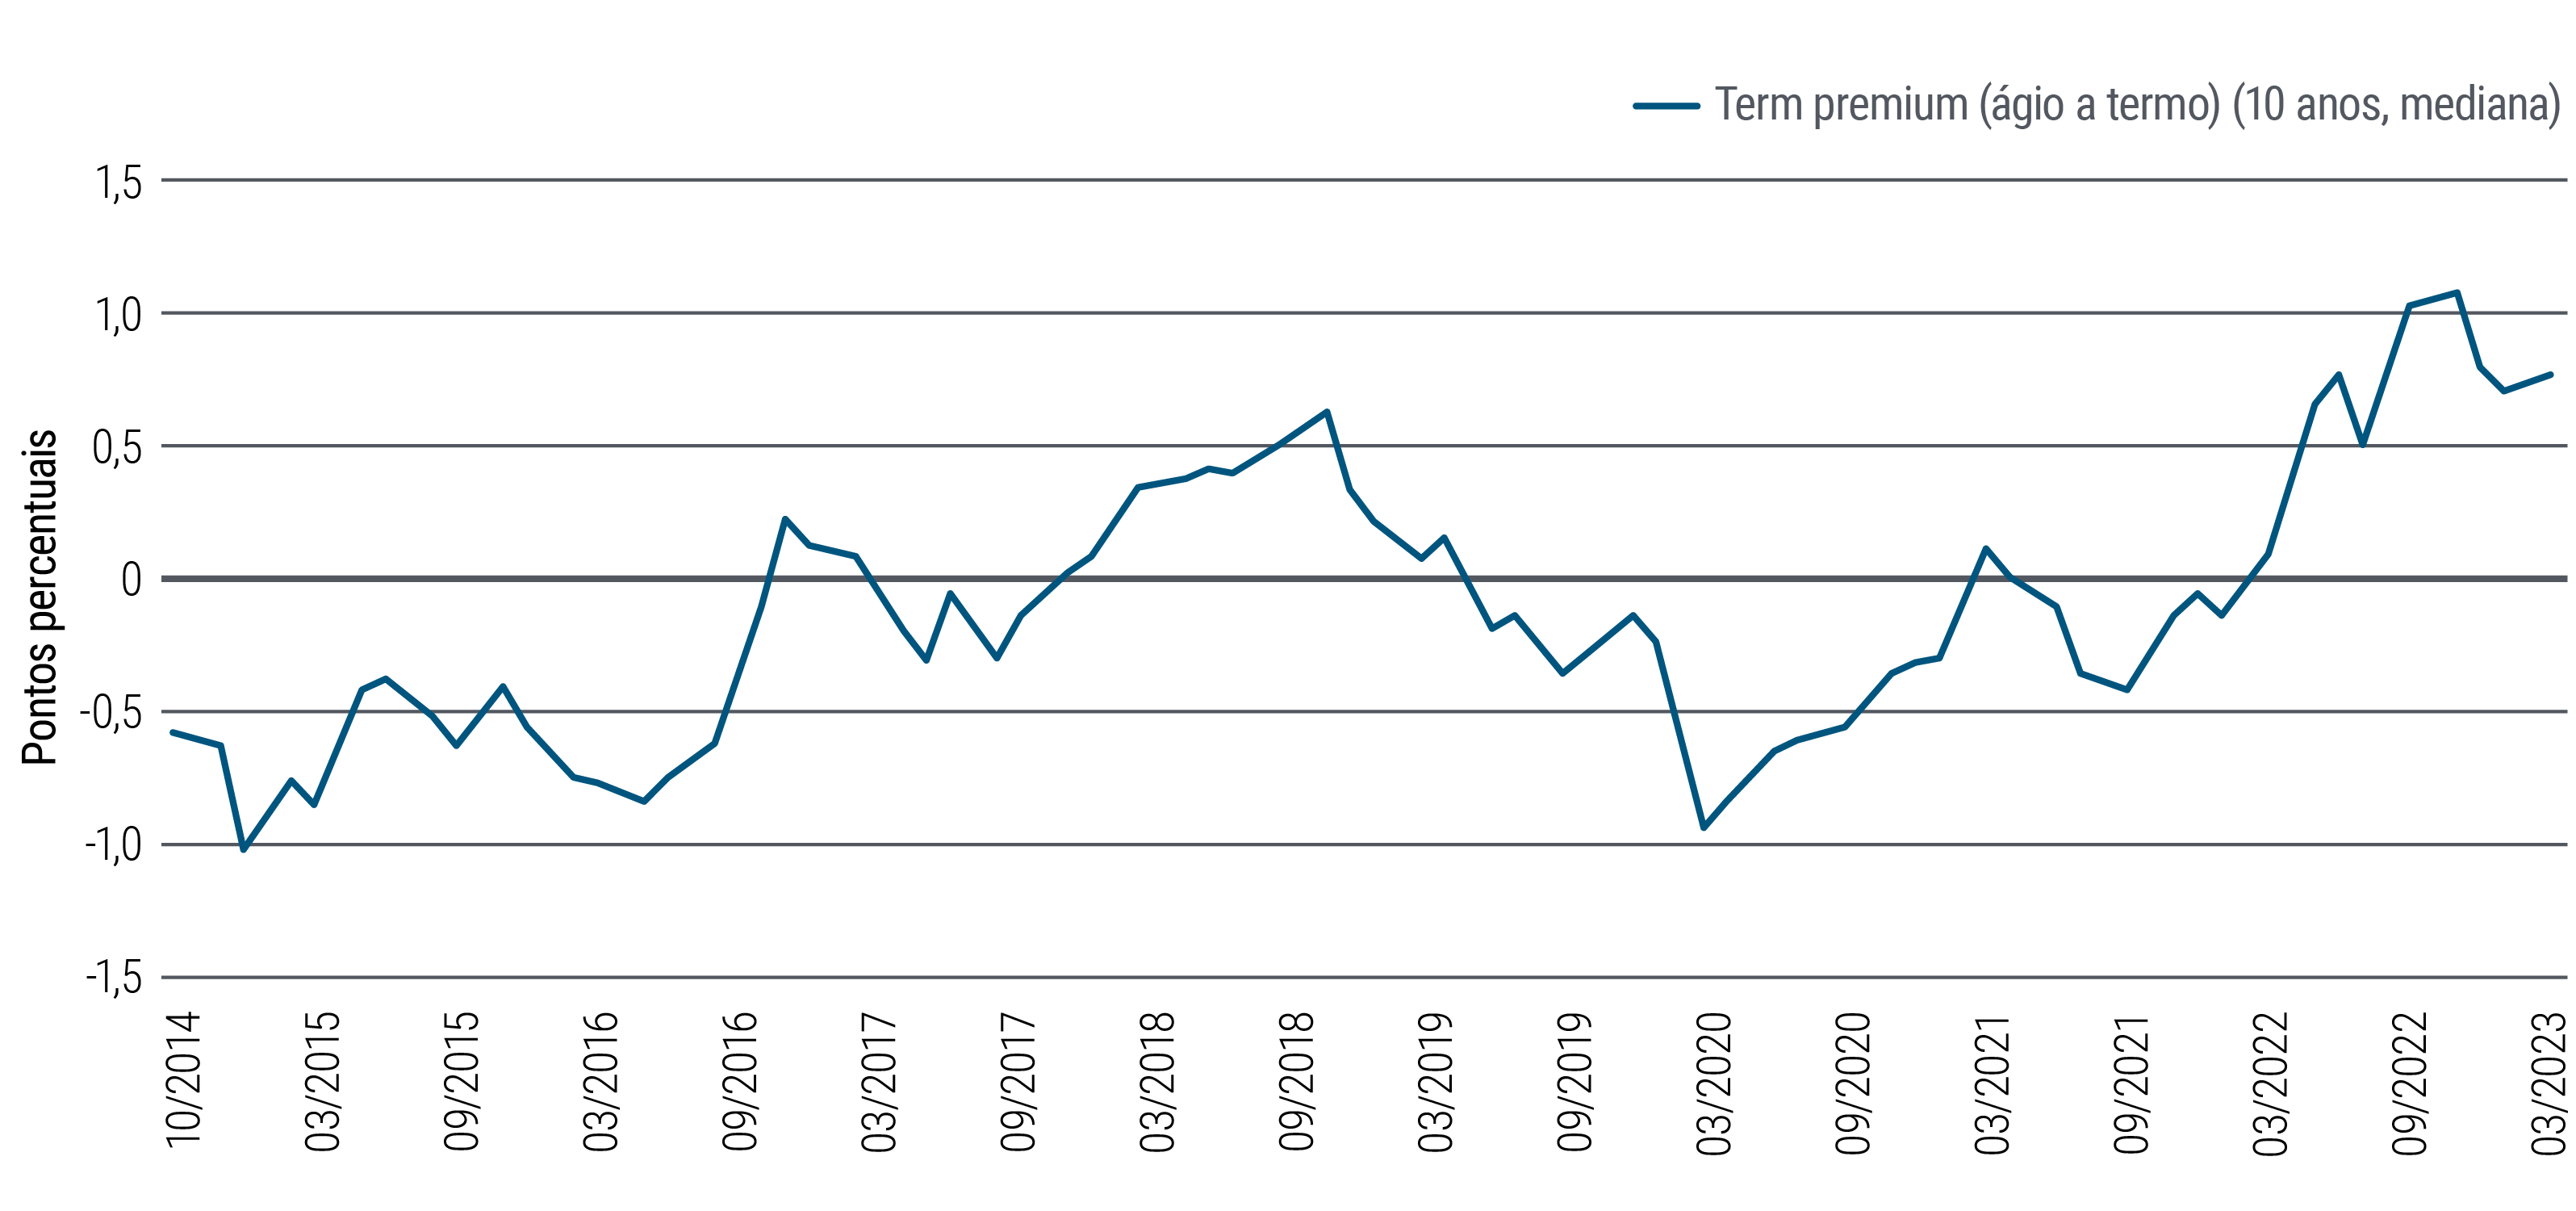 A Figura 3 é um gráfico de linhas que mostra o prêmio de prazo de uma nota de 10 anos do Tesouro dos EUA no período de outubro de 2014 a março de 2023. O prêmio de prazo é a compensação que os investidores exigem para carregar o risco de mudanças nas taxas de juros durante a vida do título de renda fixa (um número negativo indica que os investidores estão dispostos a pagar mais pela estabilidade presumida de um título de prazo mais longo, geralmente durante períodos de estresse do mercado ou macroeconômico). Ao longo do período do gráfico, o prêmio de prazo de 10 anos atingiu uma baixa de -1,02% em janeiro de 2015, depois subiu para 0,62% em novembro de 2018, caiu para -0,94% em março de 2020 e atingiu uma alta de 1,07% em novembro de 2022. Em março de 2023, estava em 0,76%.